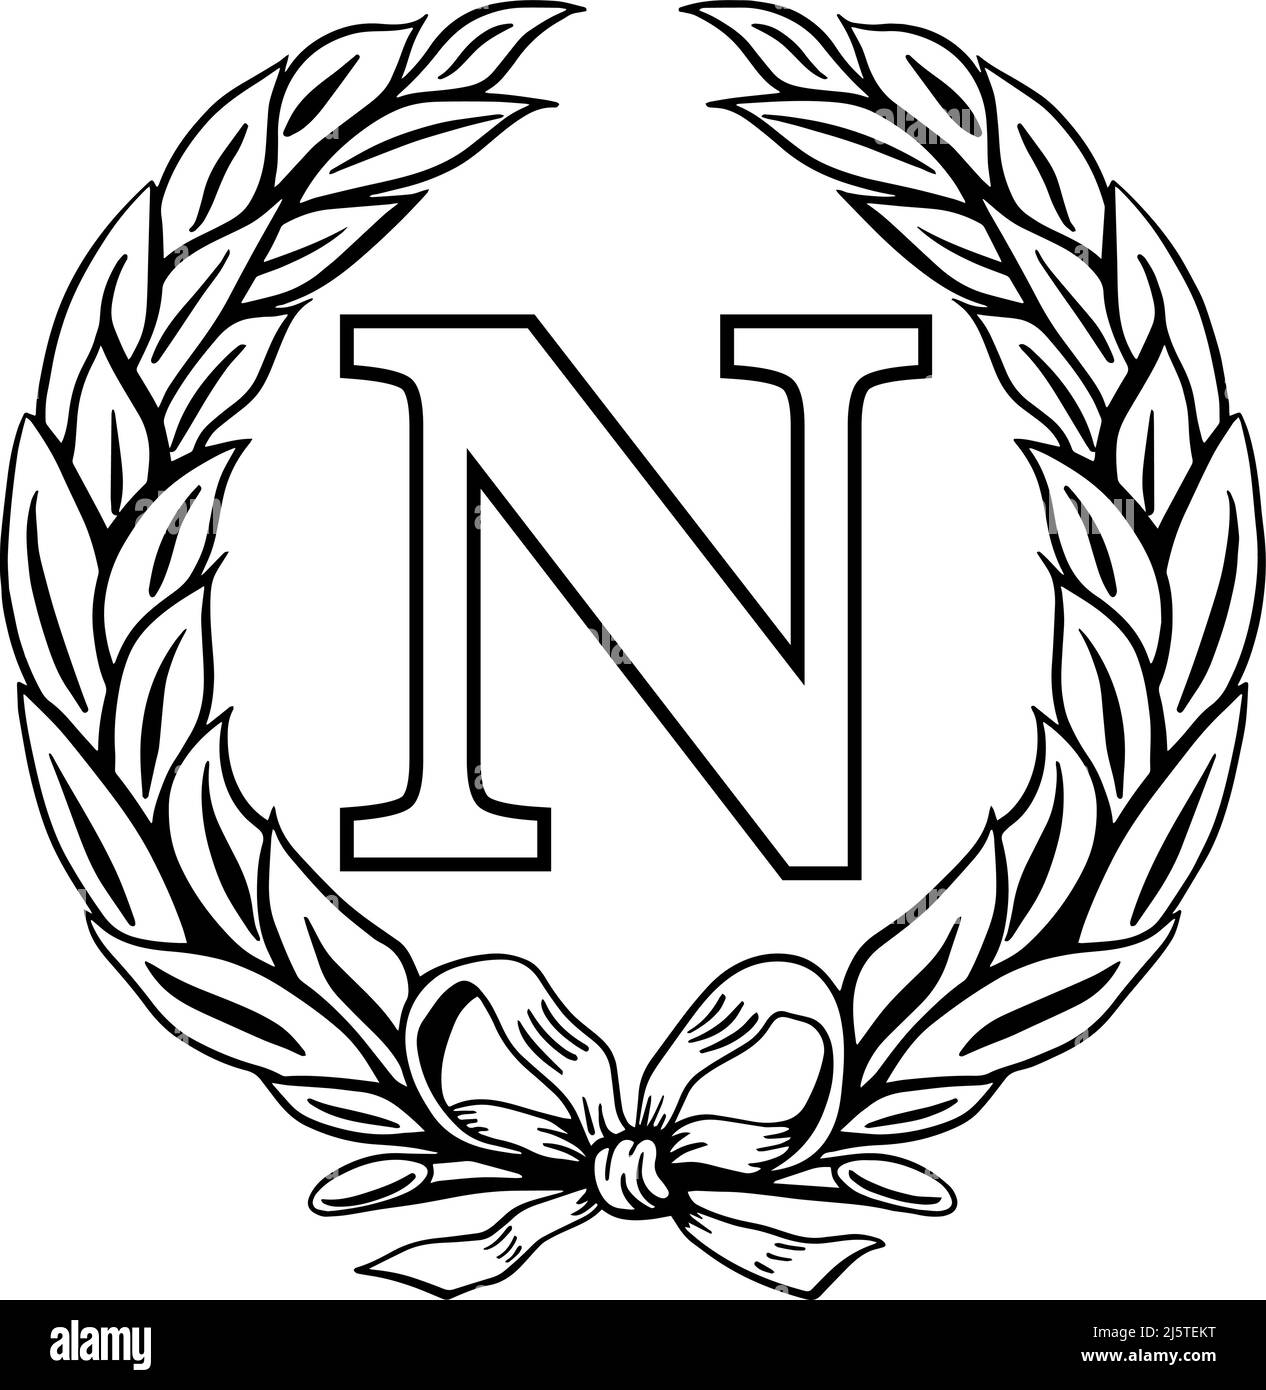 Symbole N de la lettre napoléonienne à l'intérieur d'une couronne de Laurier, illustration vectorielle sur fond blanc Illustration de Vecteur